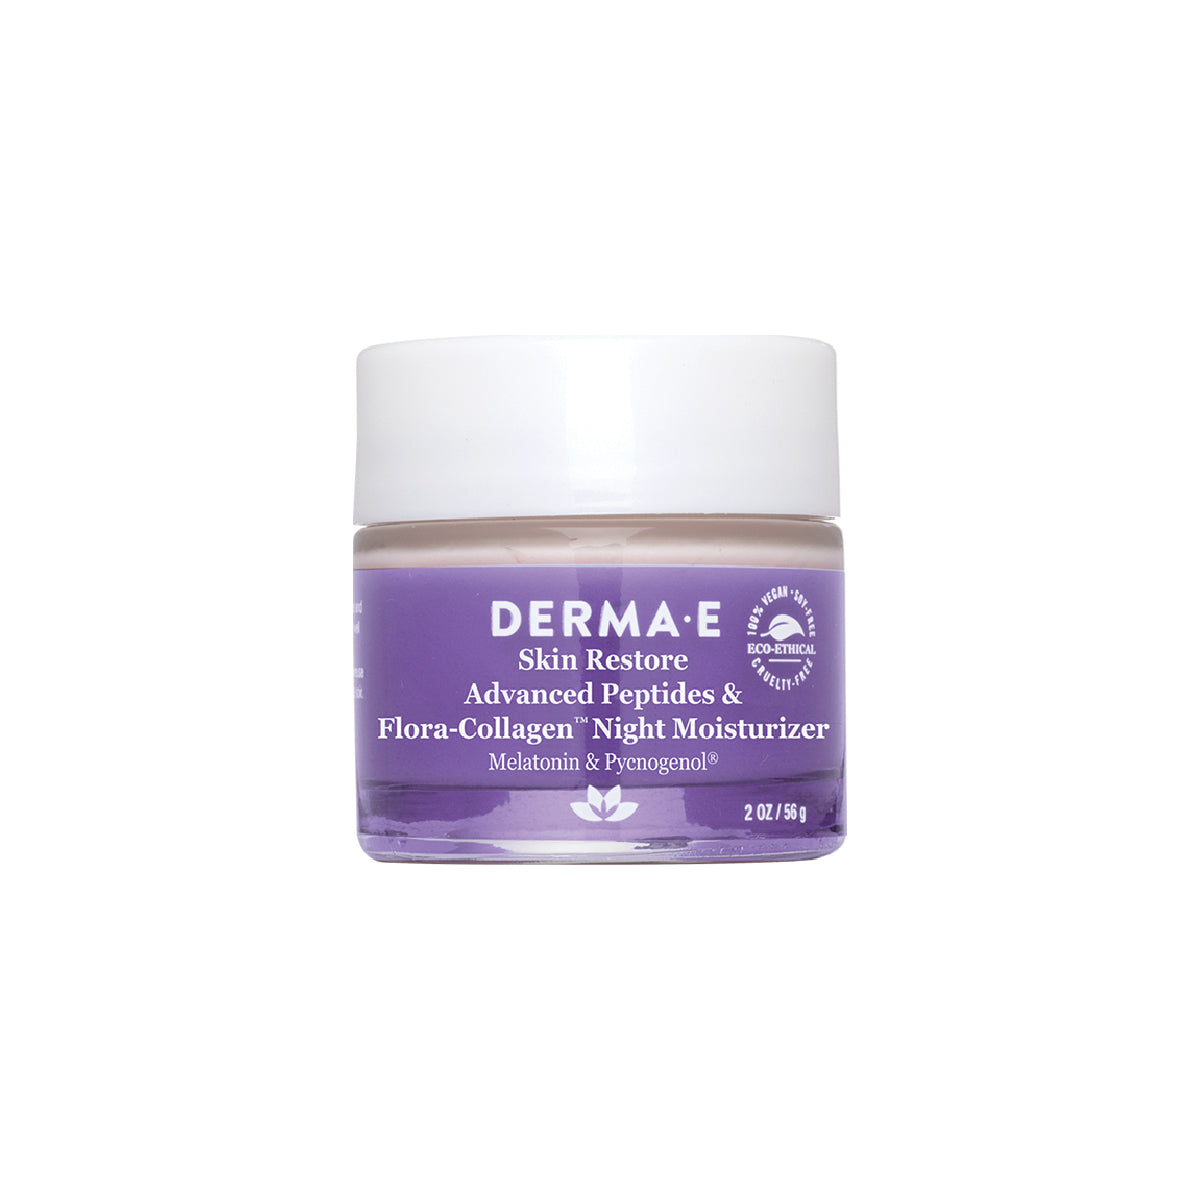 Advanced Peptides & Flora-Collagen™ Night Moisturizer by DERMA E, 2 oz jar, front view